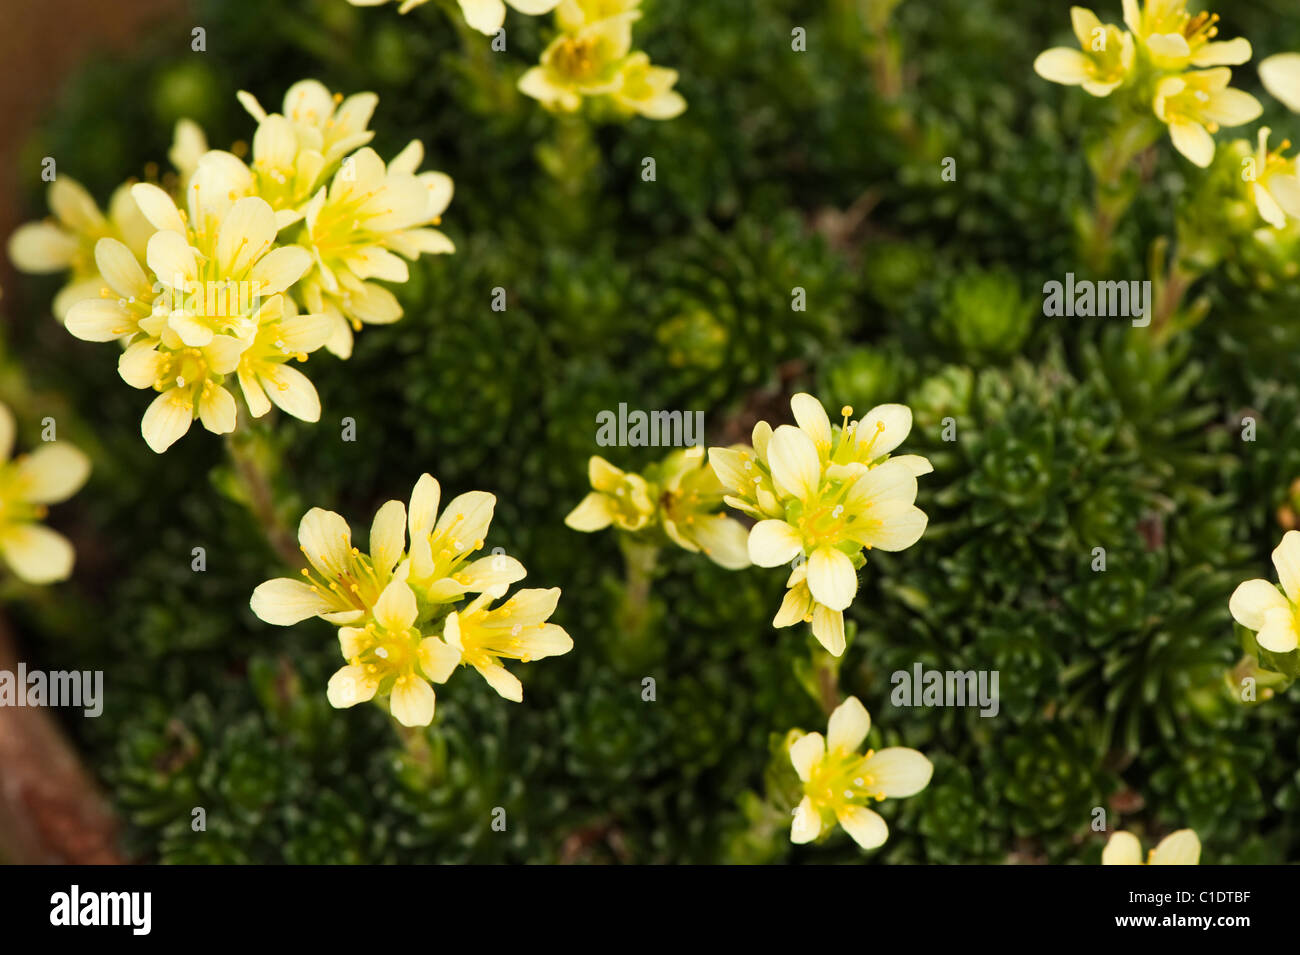 Saxifraga x apiculata ‘Albert Einstein’ in flower Stock Photo